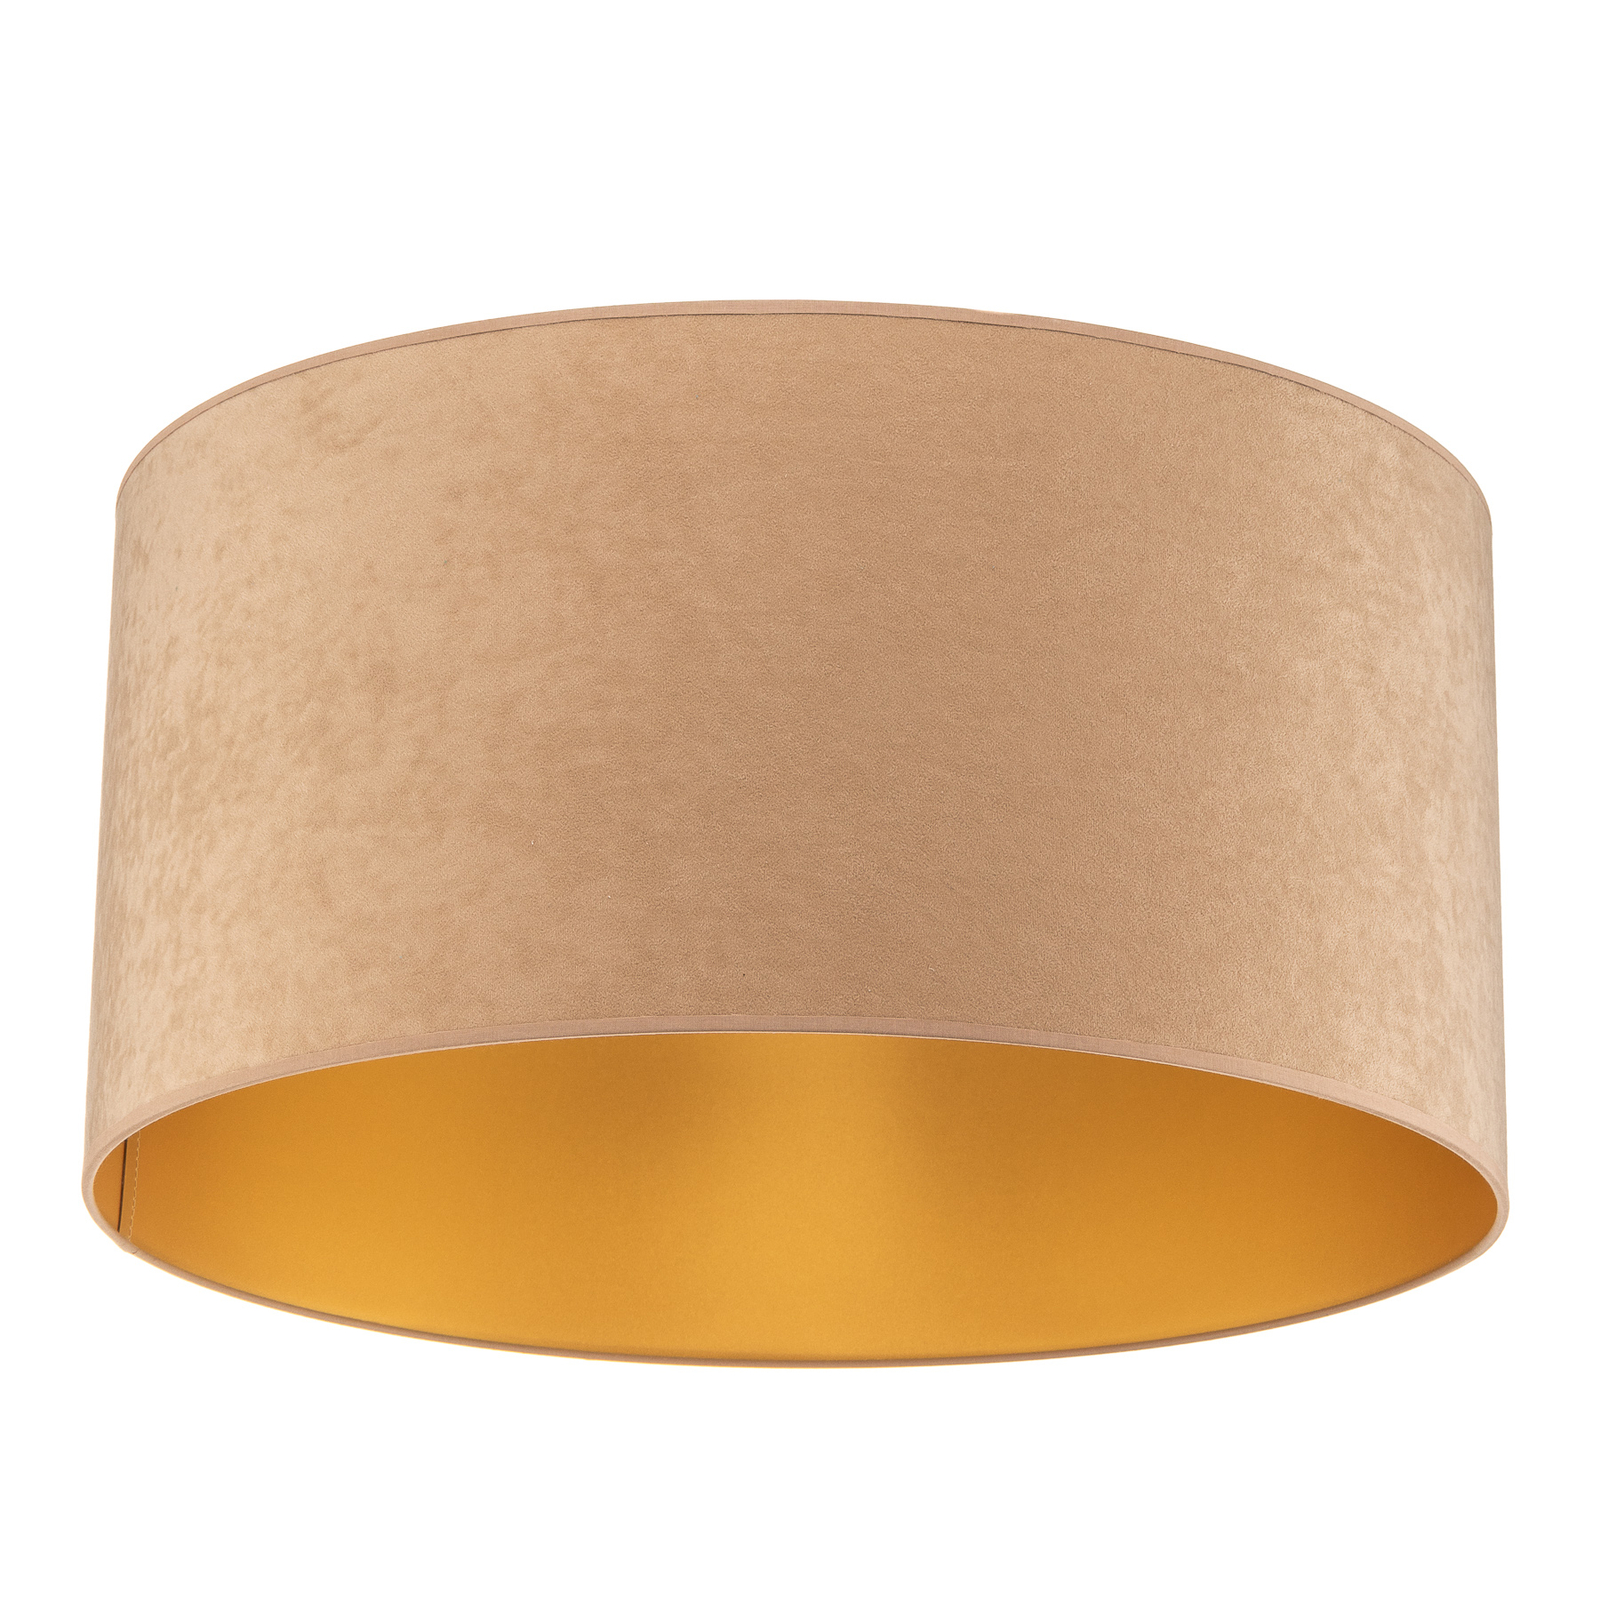 Deckenlampe Golden Roller Ø 60cm beige/gold